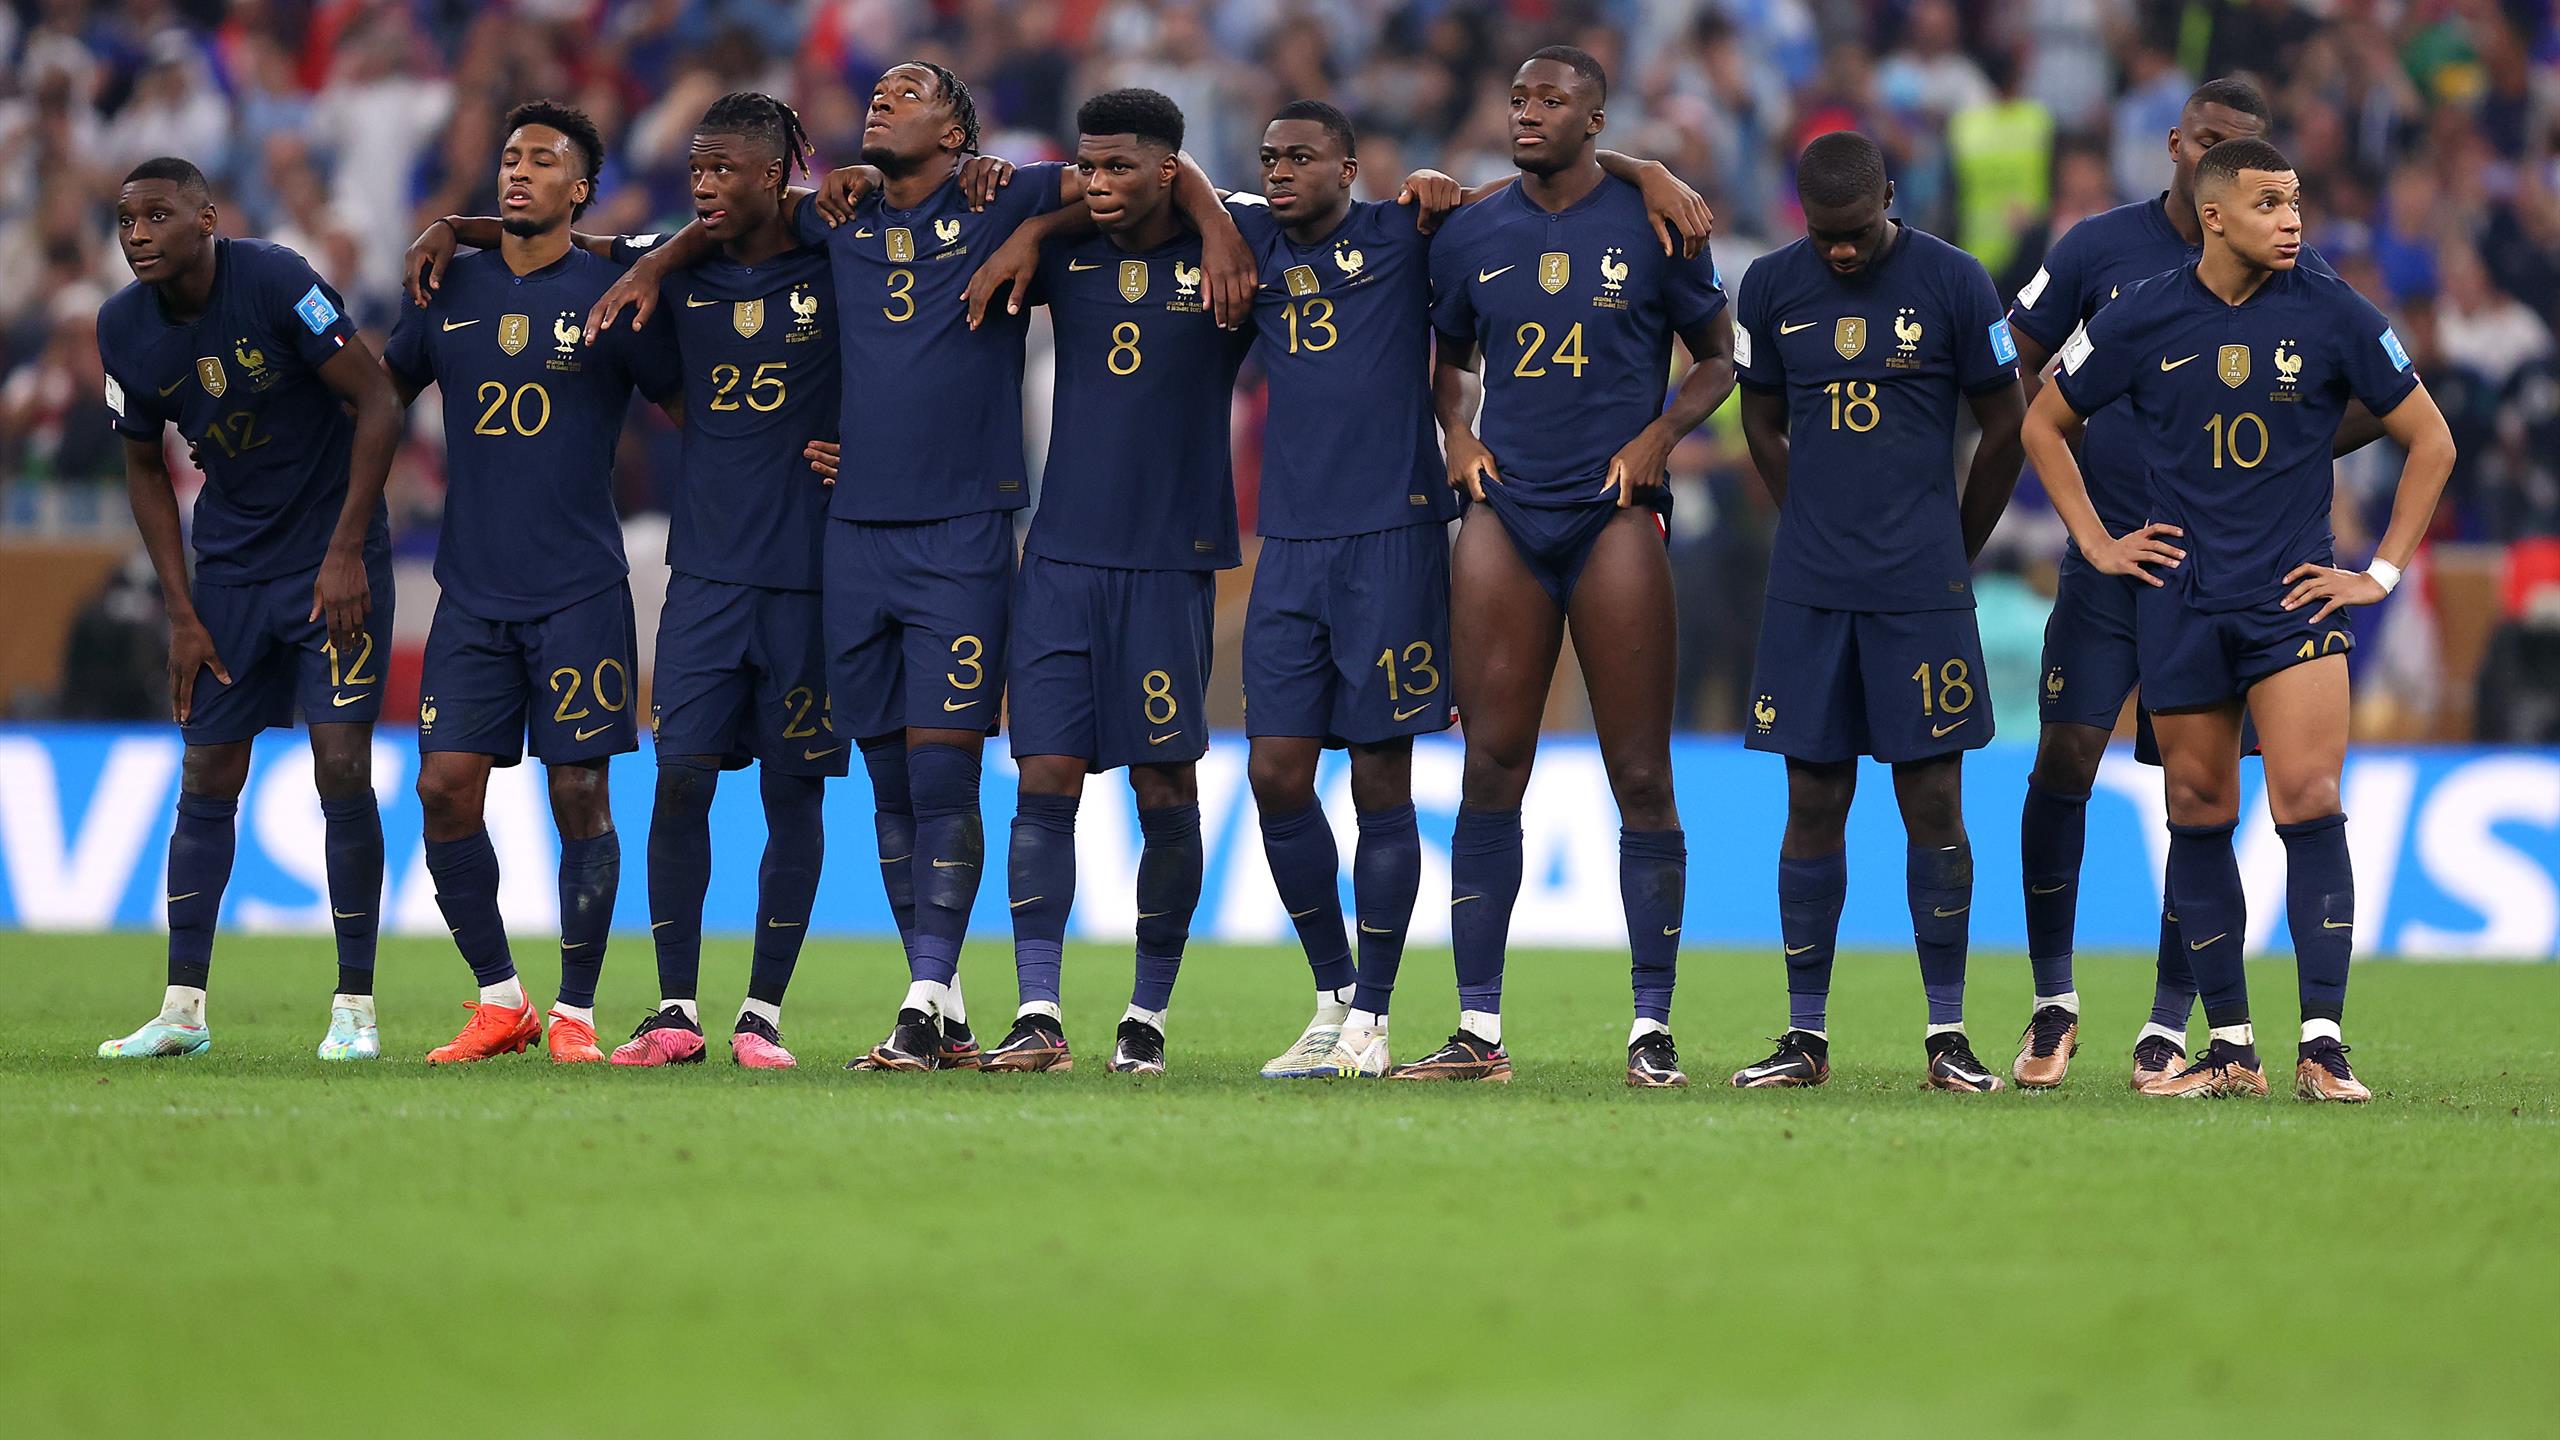 « L’Afrique a perdu la Coupe du monde », le glissement raciste